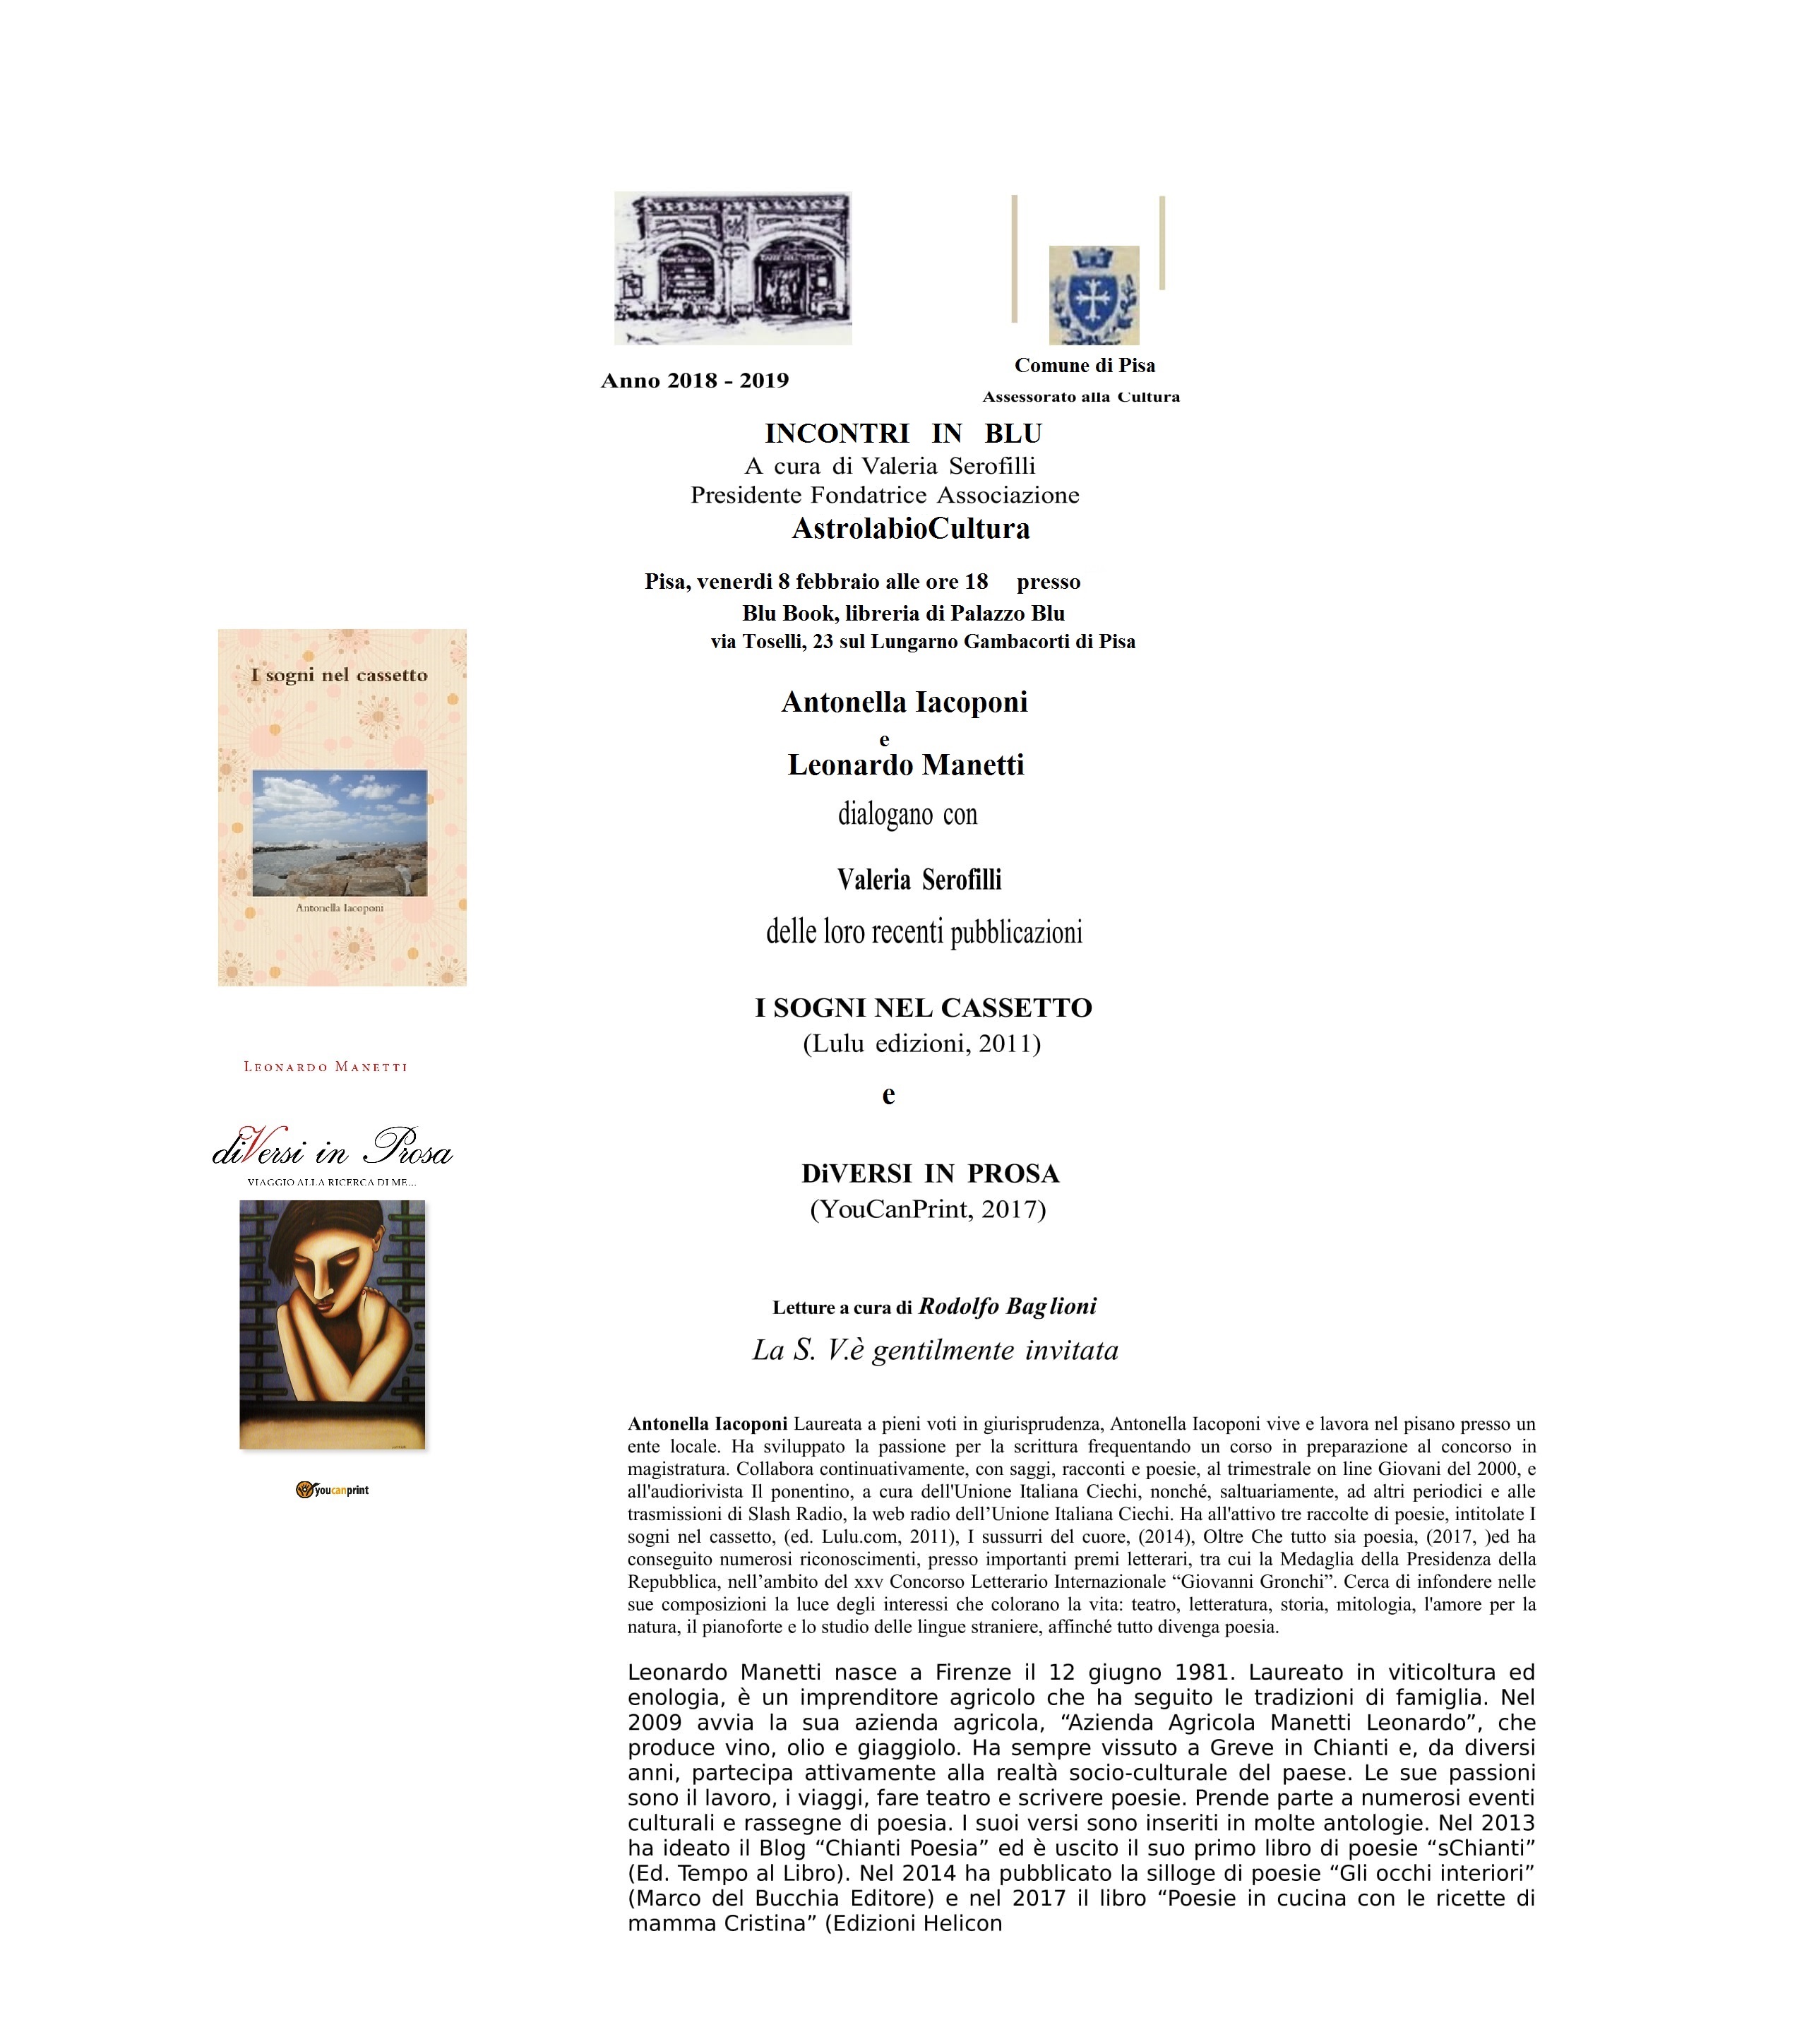 invito Palazzo Blu Iacoponi - Manetti 8.2.2019